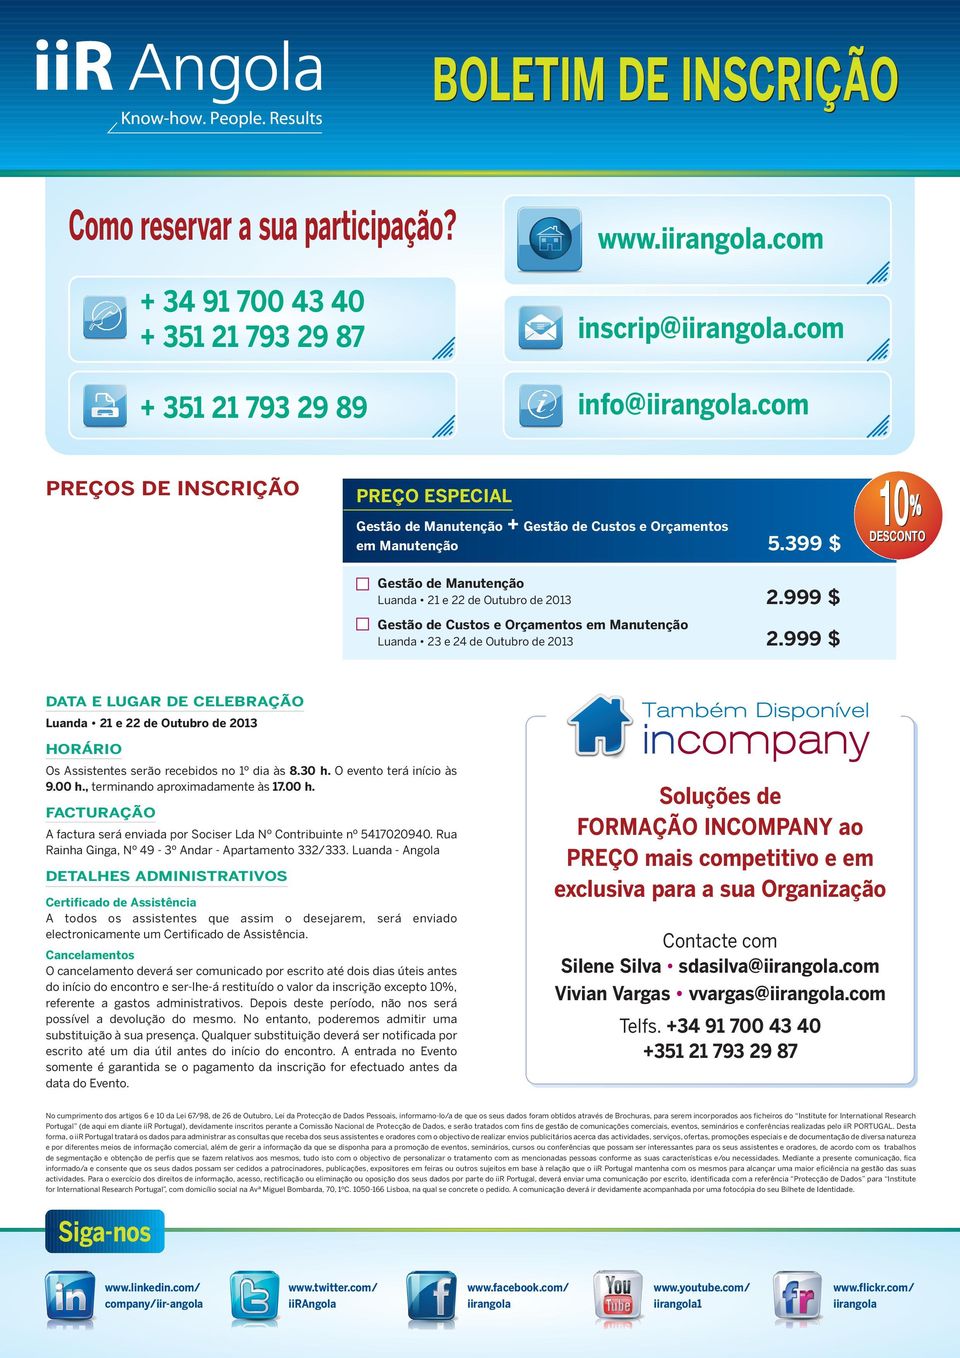 999 $ Gestão de Custos e Orçamentos em Manutenção Luanda 23 e 24 de Outubro de 2013 2.